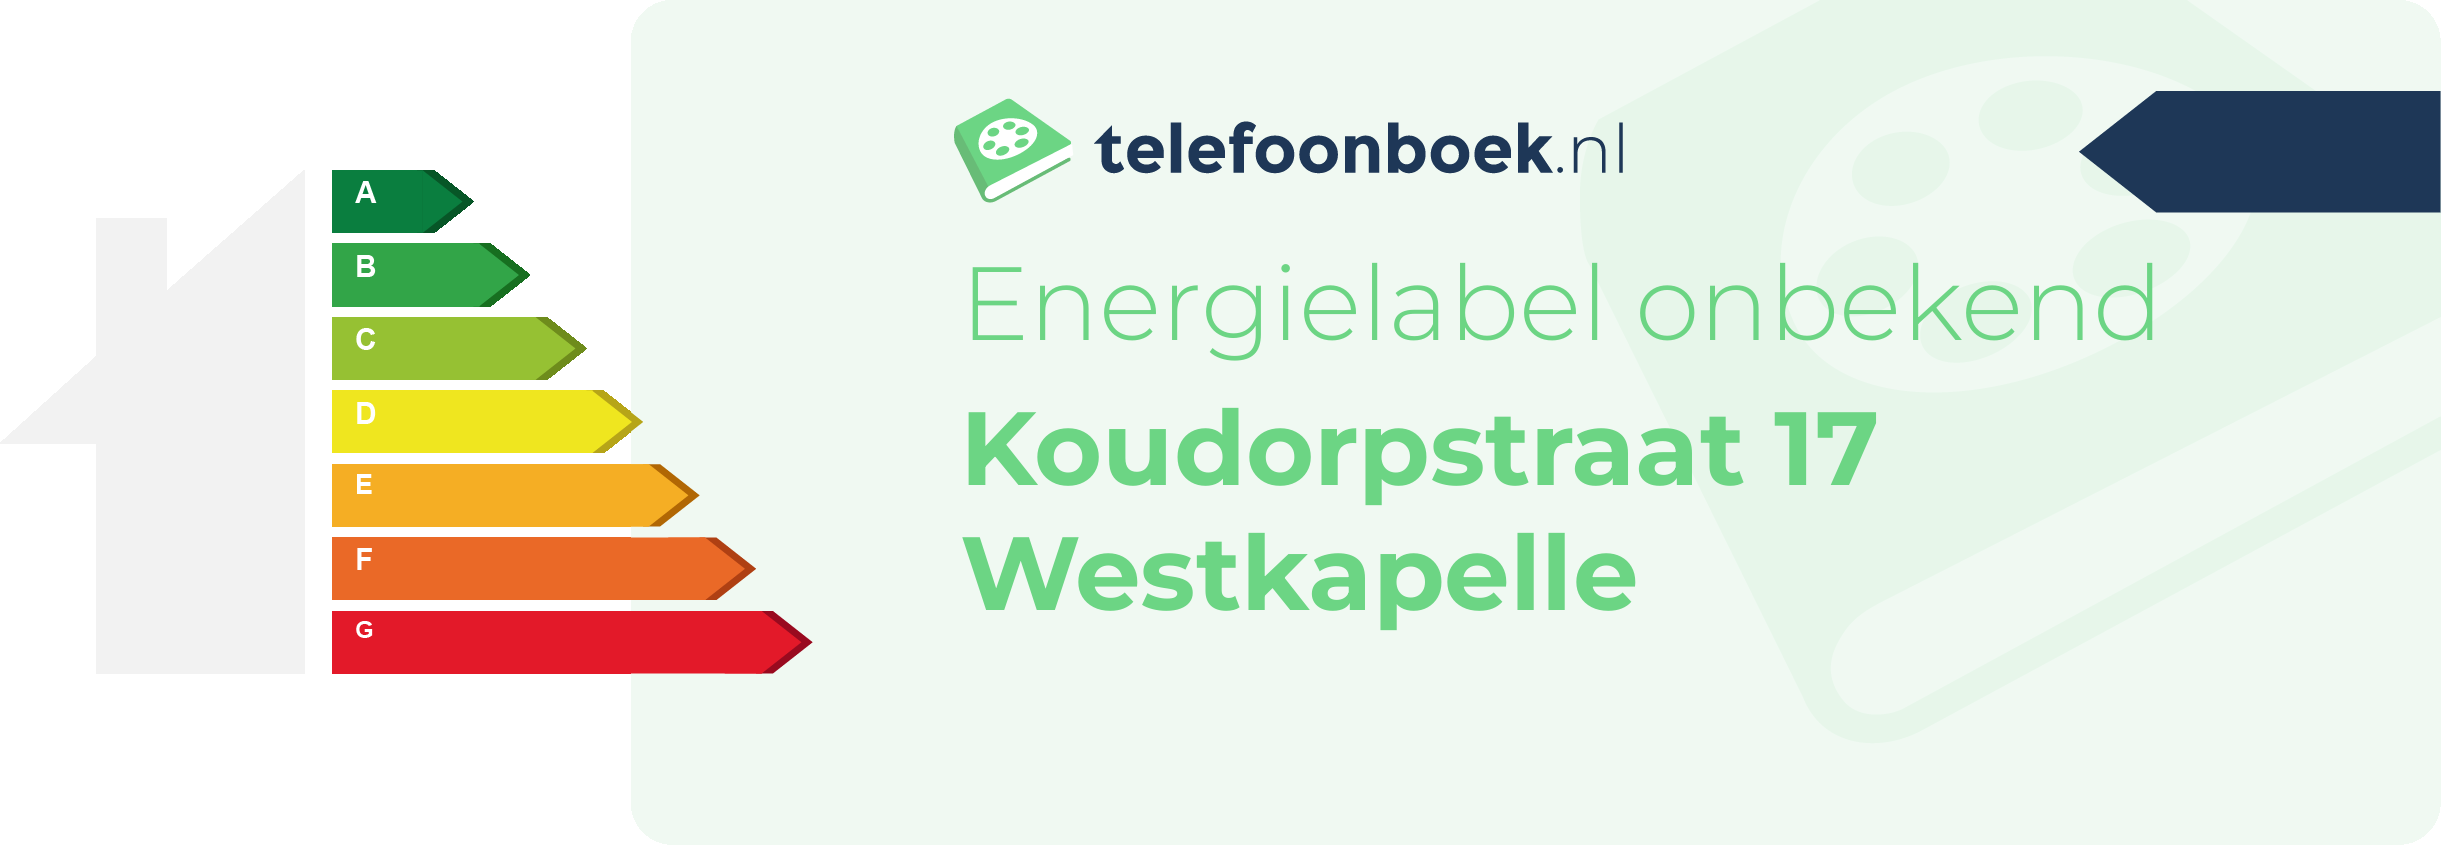 Energielabel Koudorpstraat 17 Westkapelle